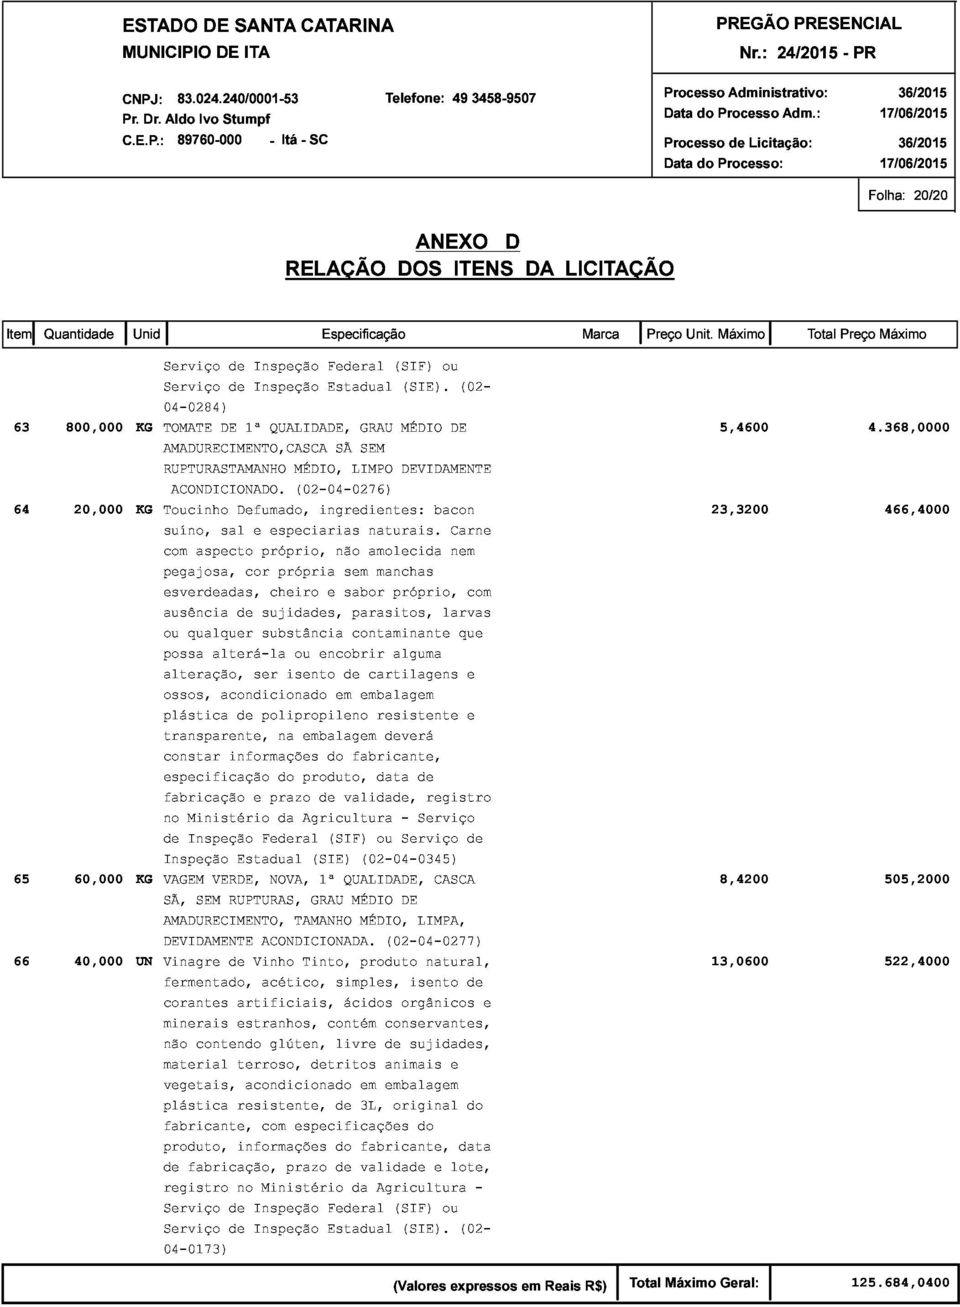 DE Defumado, 1ª QUALIDADE, MÉDIO, (02-04-0276) ingredientes: SÃ LIMPO GRAU SEM MÉDIO DEVIDAMENTE bacon 23,3200 5,4600 4.